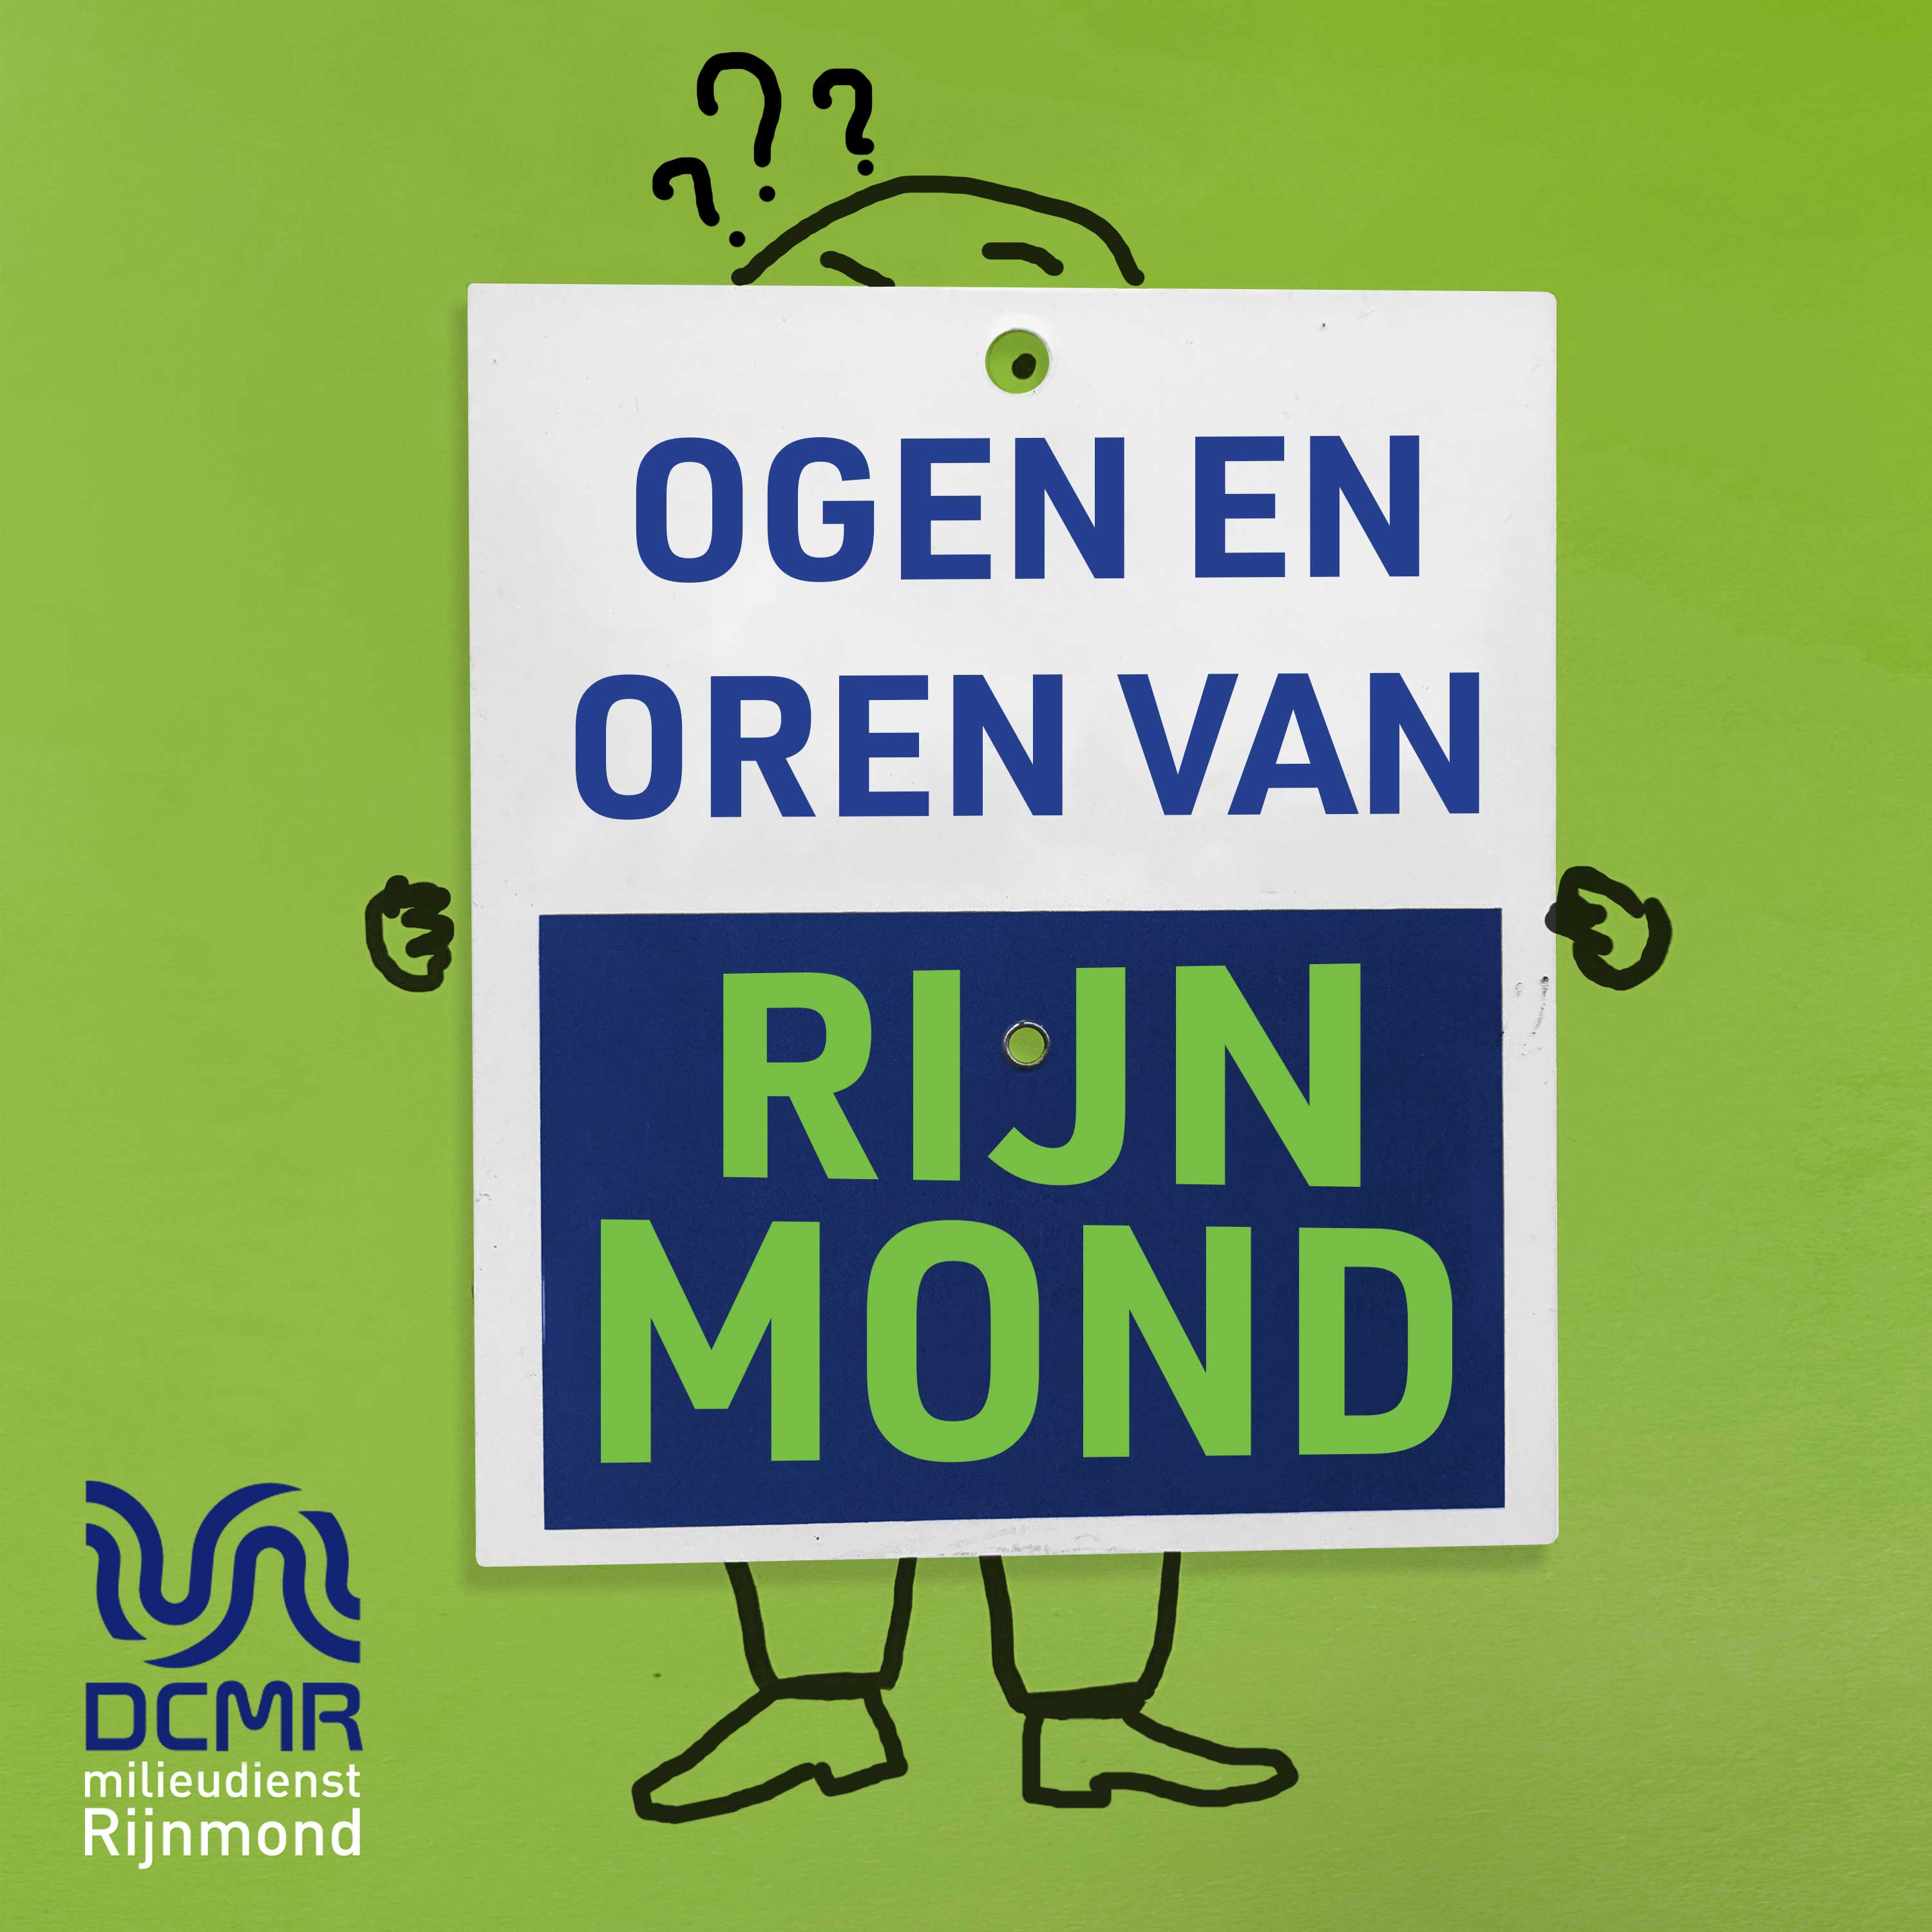 Ogen en oren van Rijnmond podcast show image